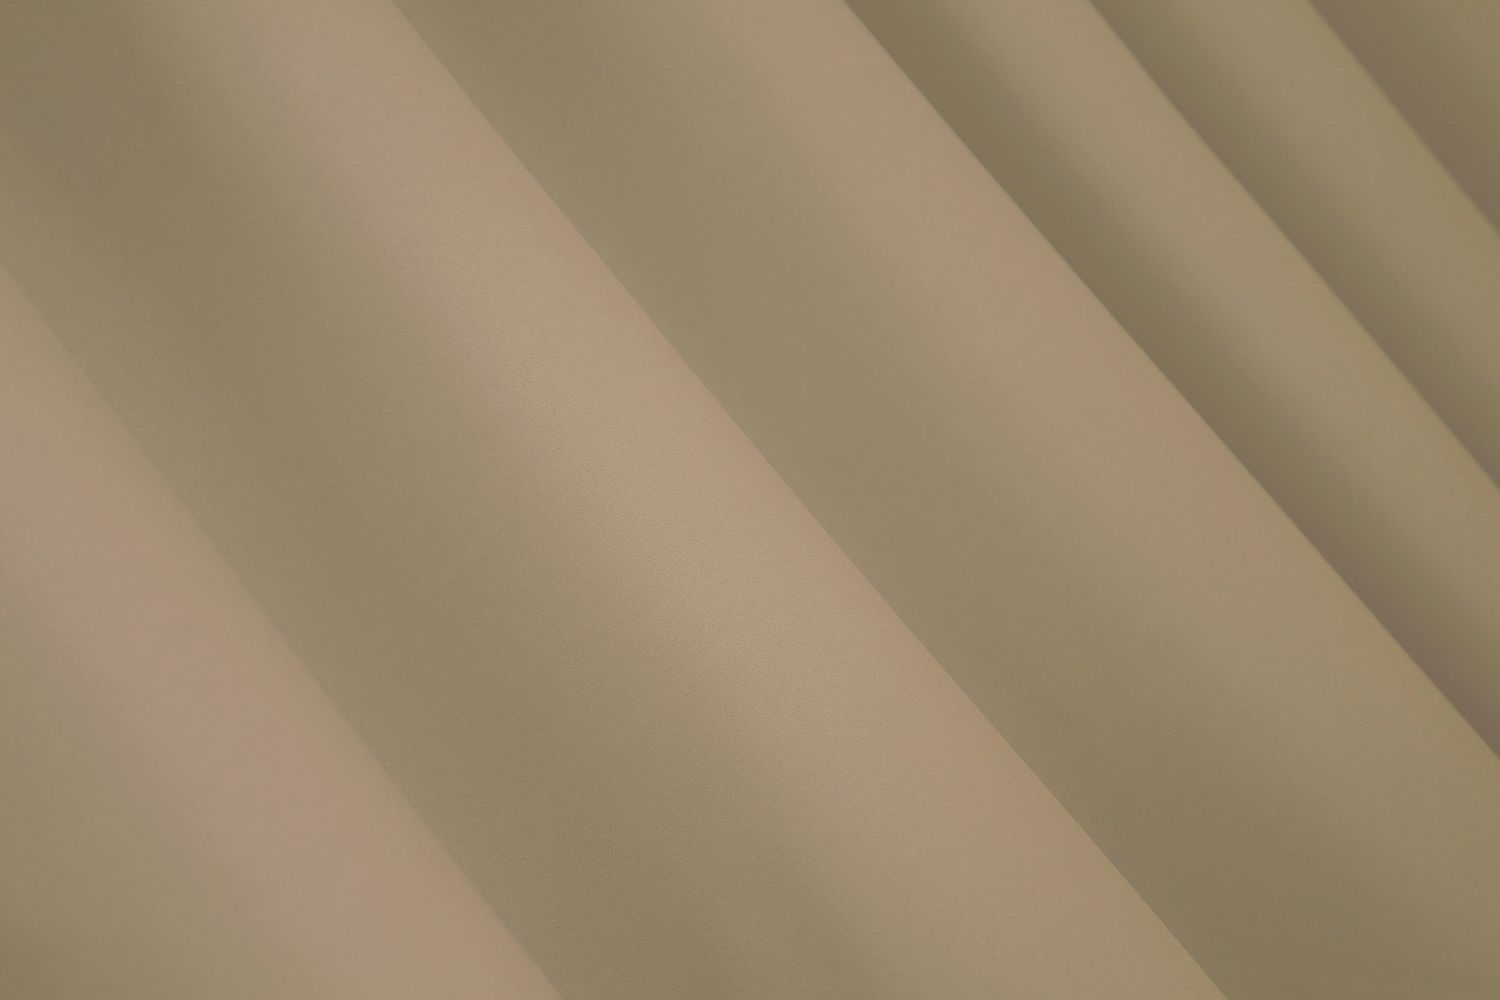 Комплект штор із тканини блекаут, колекція "Midnight". Колір беж. Код 1232ш, Комплект штор (2 шт. 1,5х2,9м.), Класичні, Без ламбрекена, Довгі, 1,5 м., 2,9 м., 150, 290, 2 - 3 м., В комплекті 2 шт., Тасьма